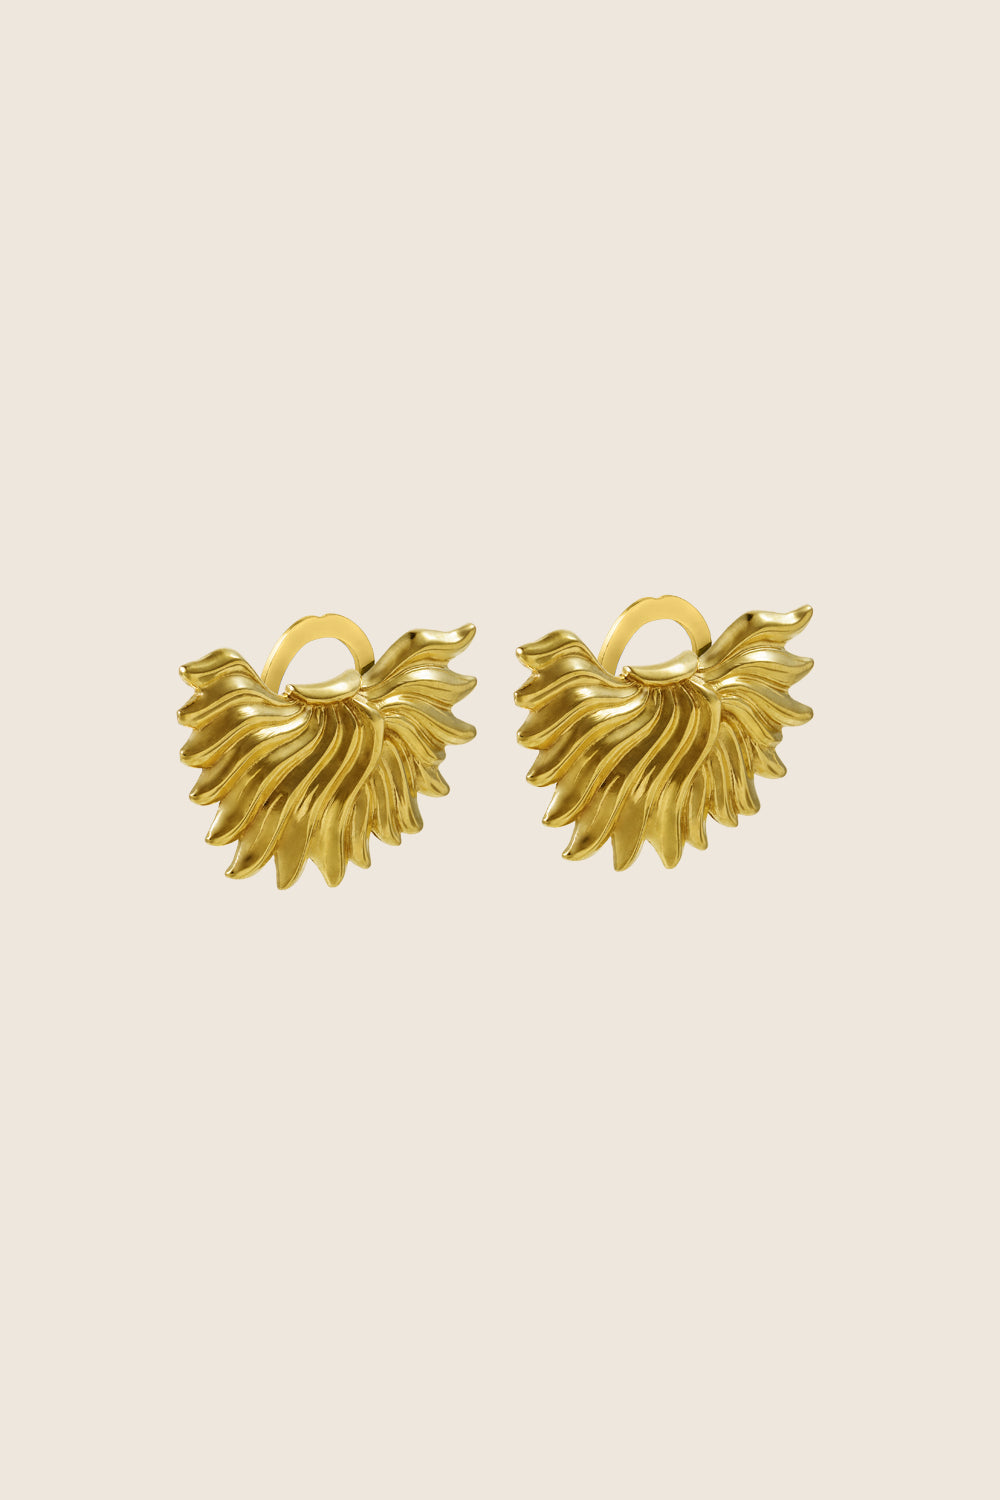 IGNIS clip earrings